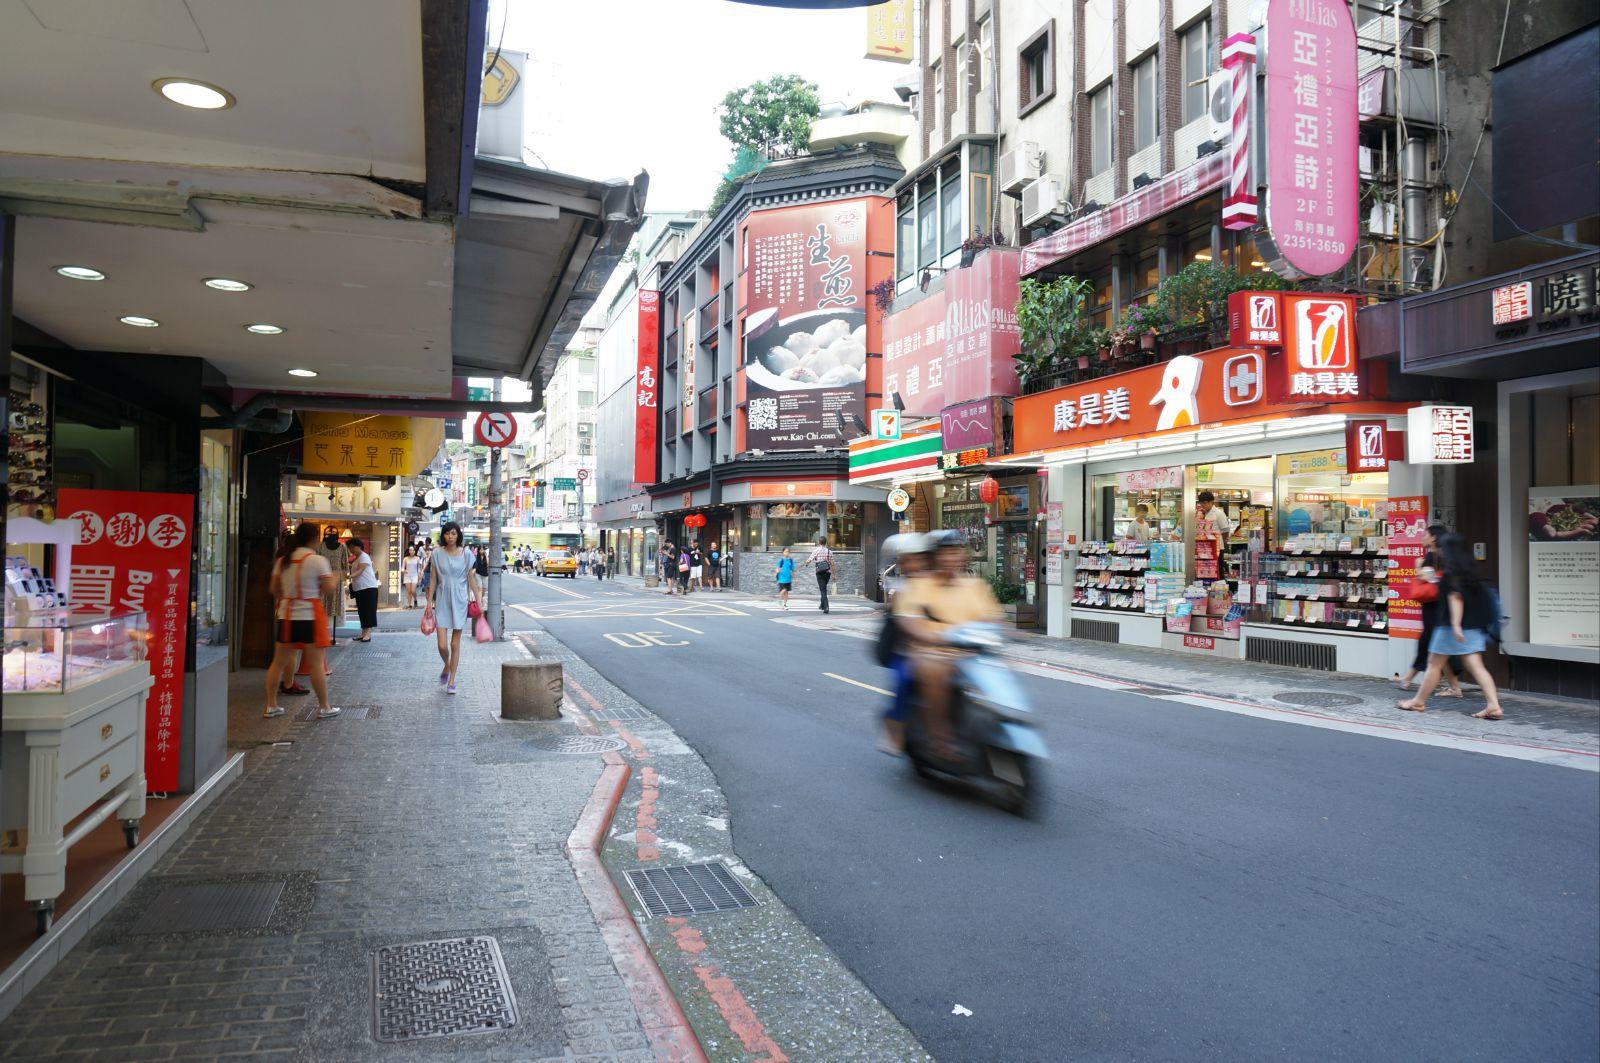 【携程攻略】台北永康街景点,永康街呢,是一个人文气息很强的地方,和